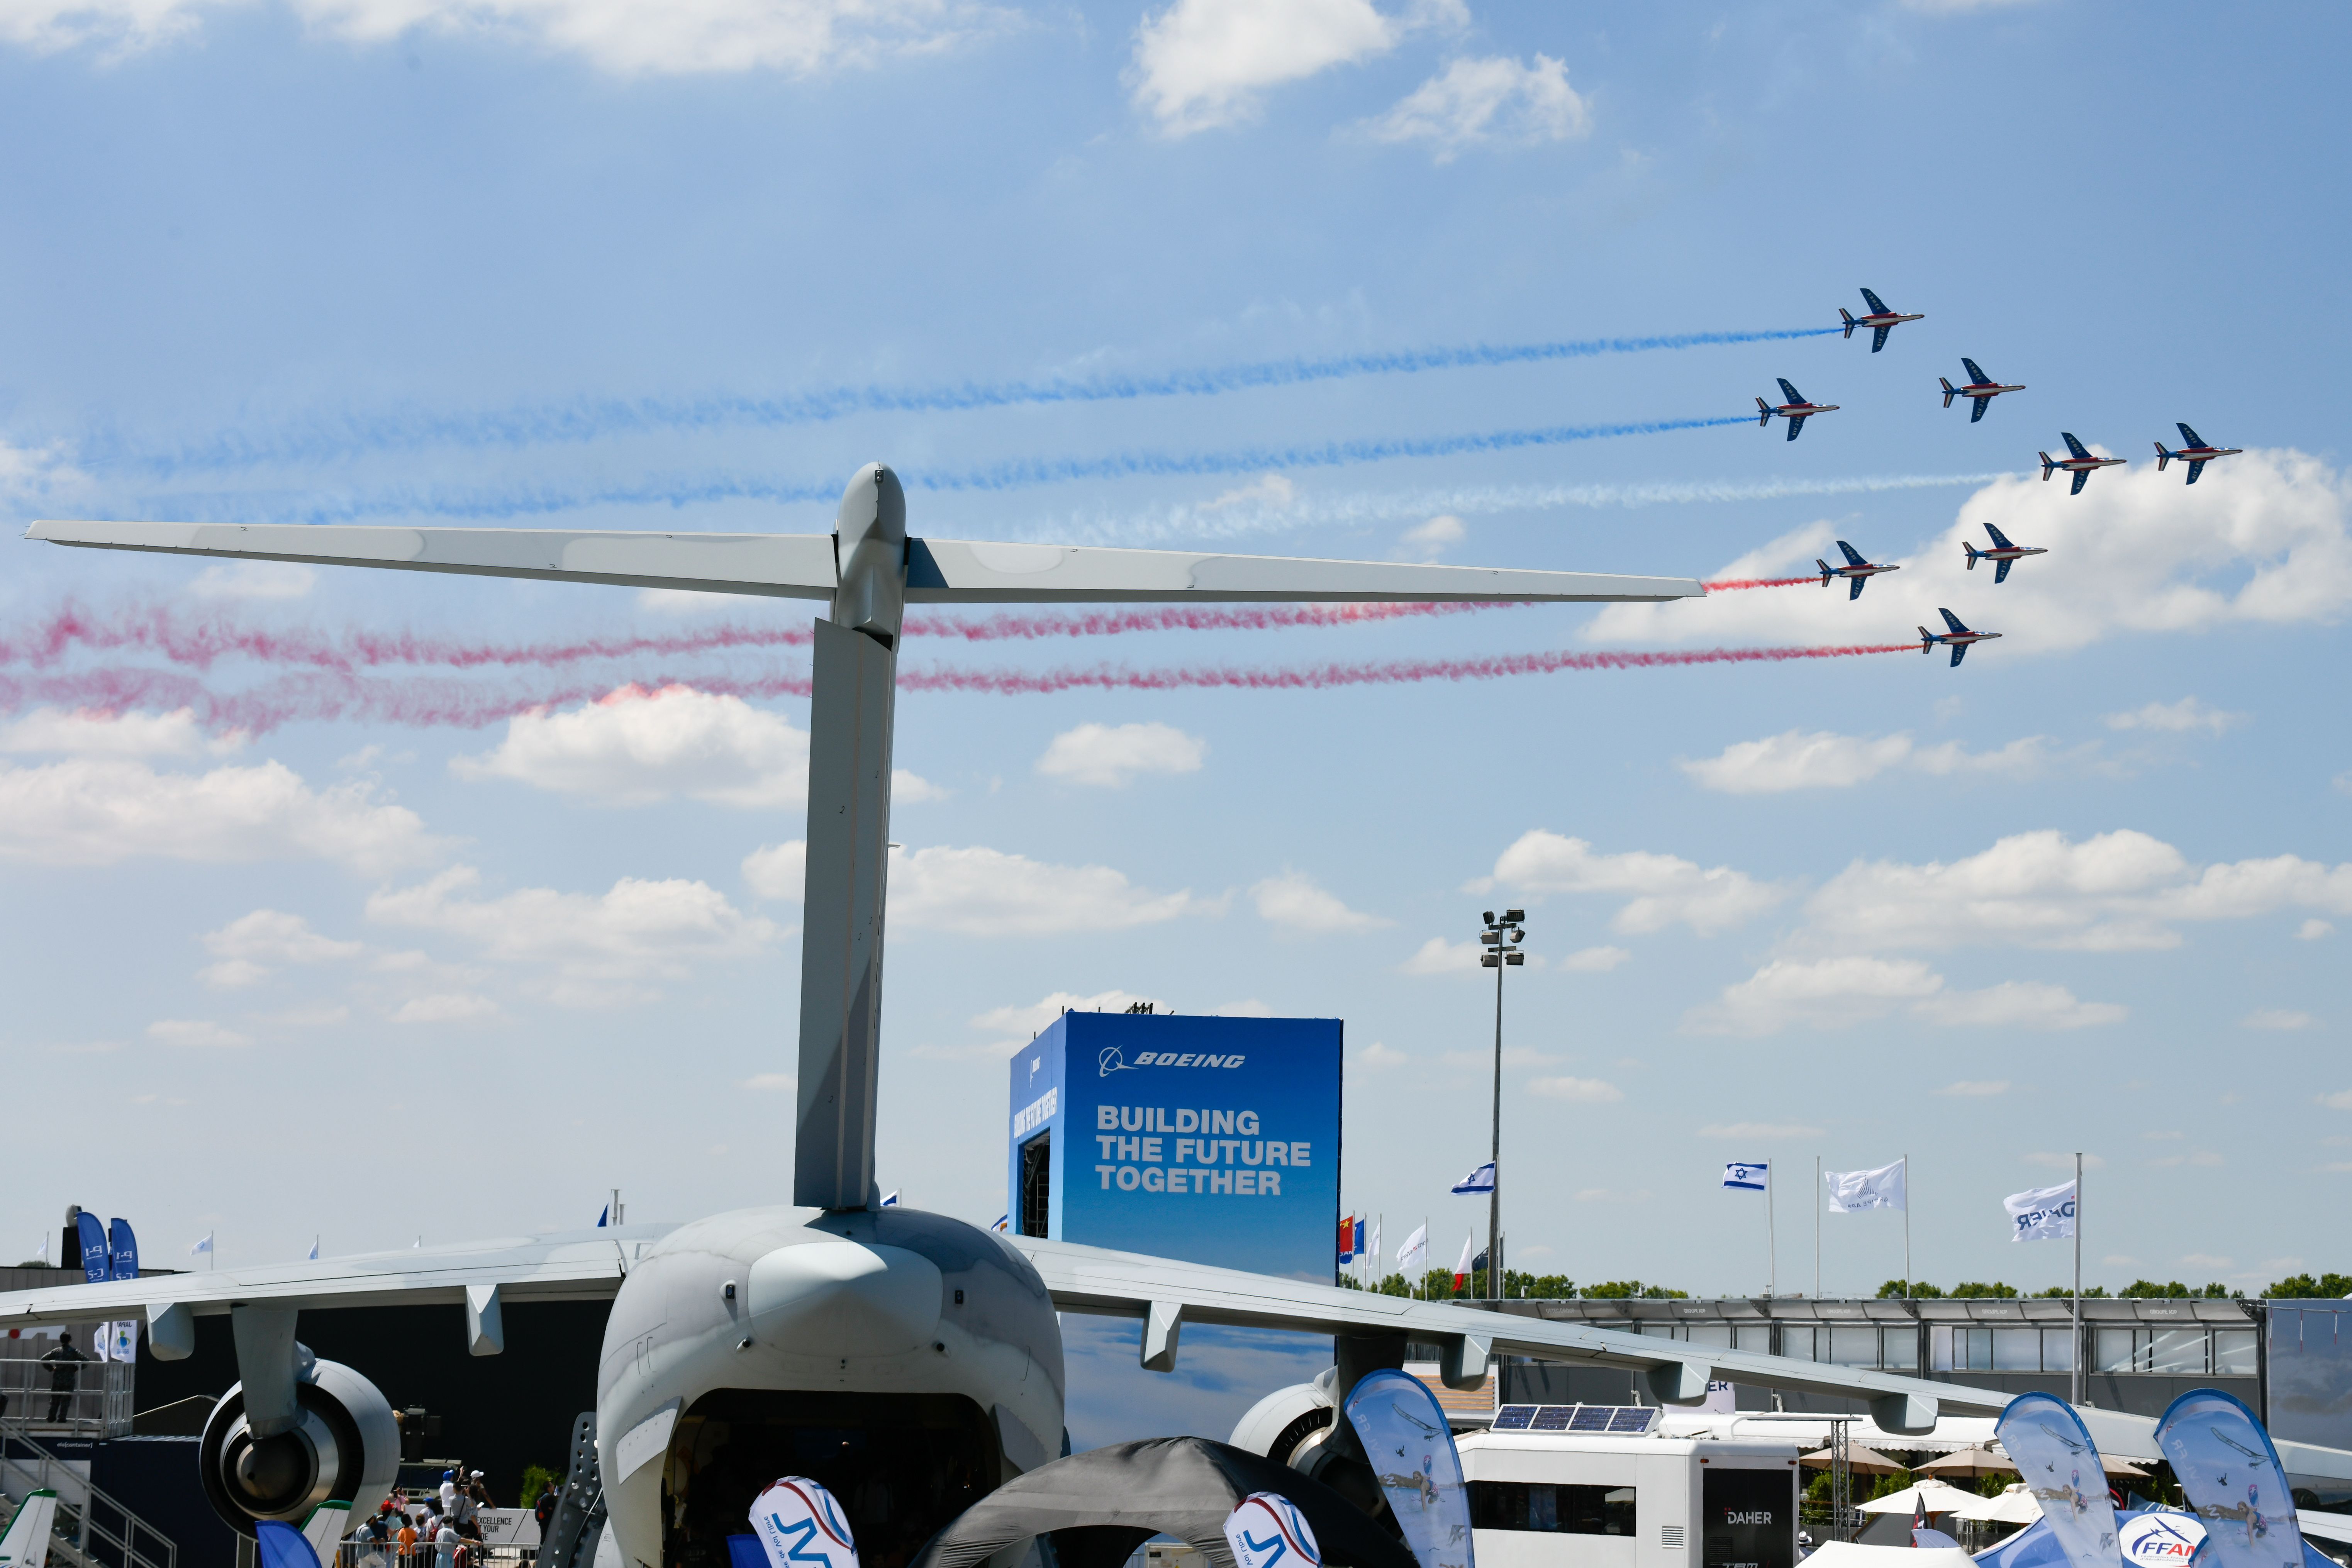 The Patrouille De France perform at the 2019 Paris Air Show